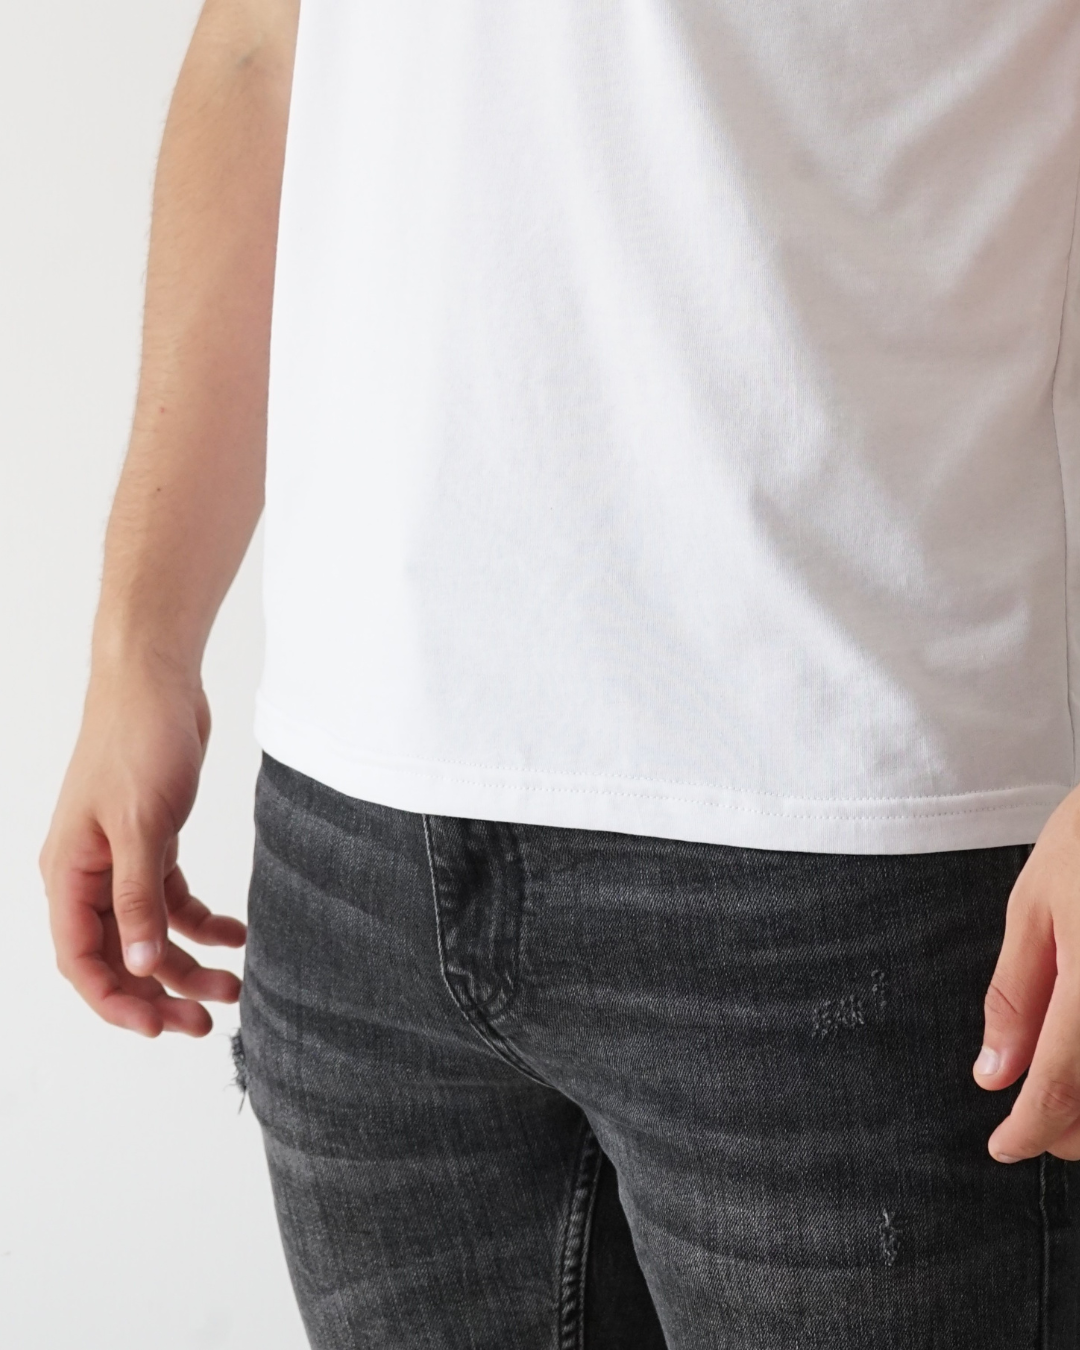 White T-shirt - Short Sleeve Wide Neck Straight Bottom